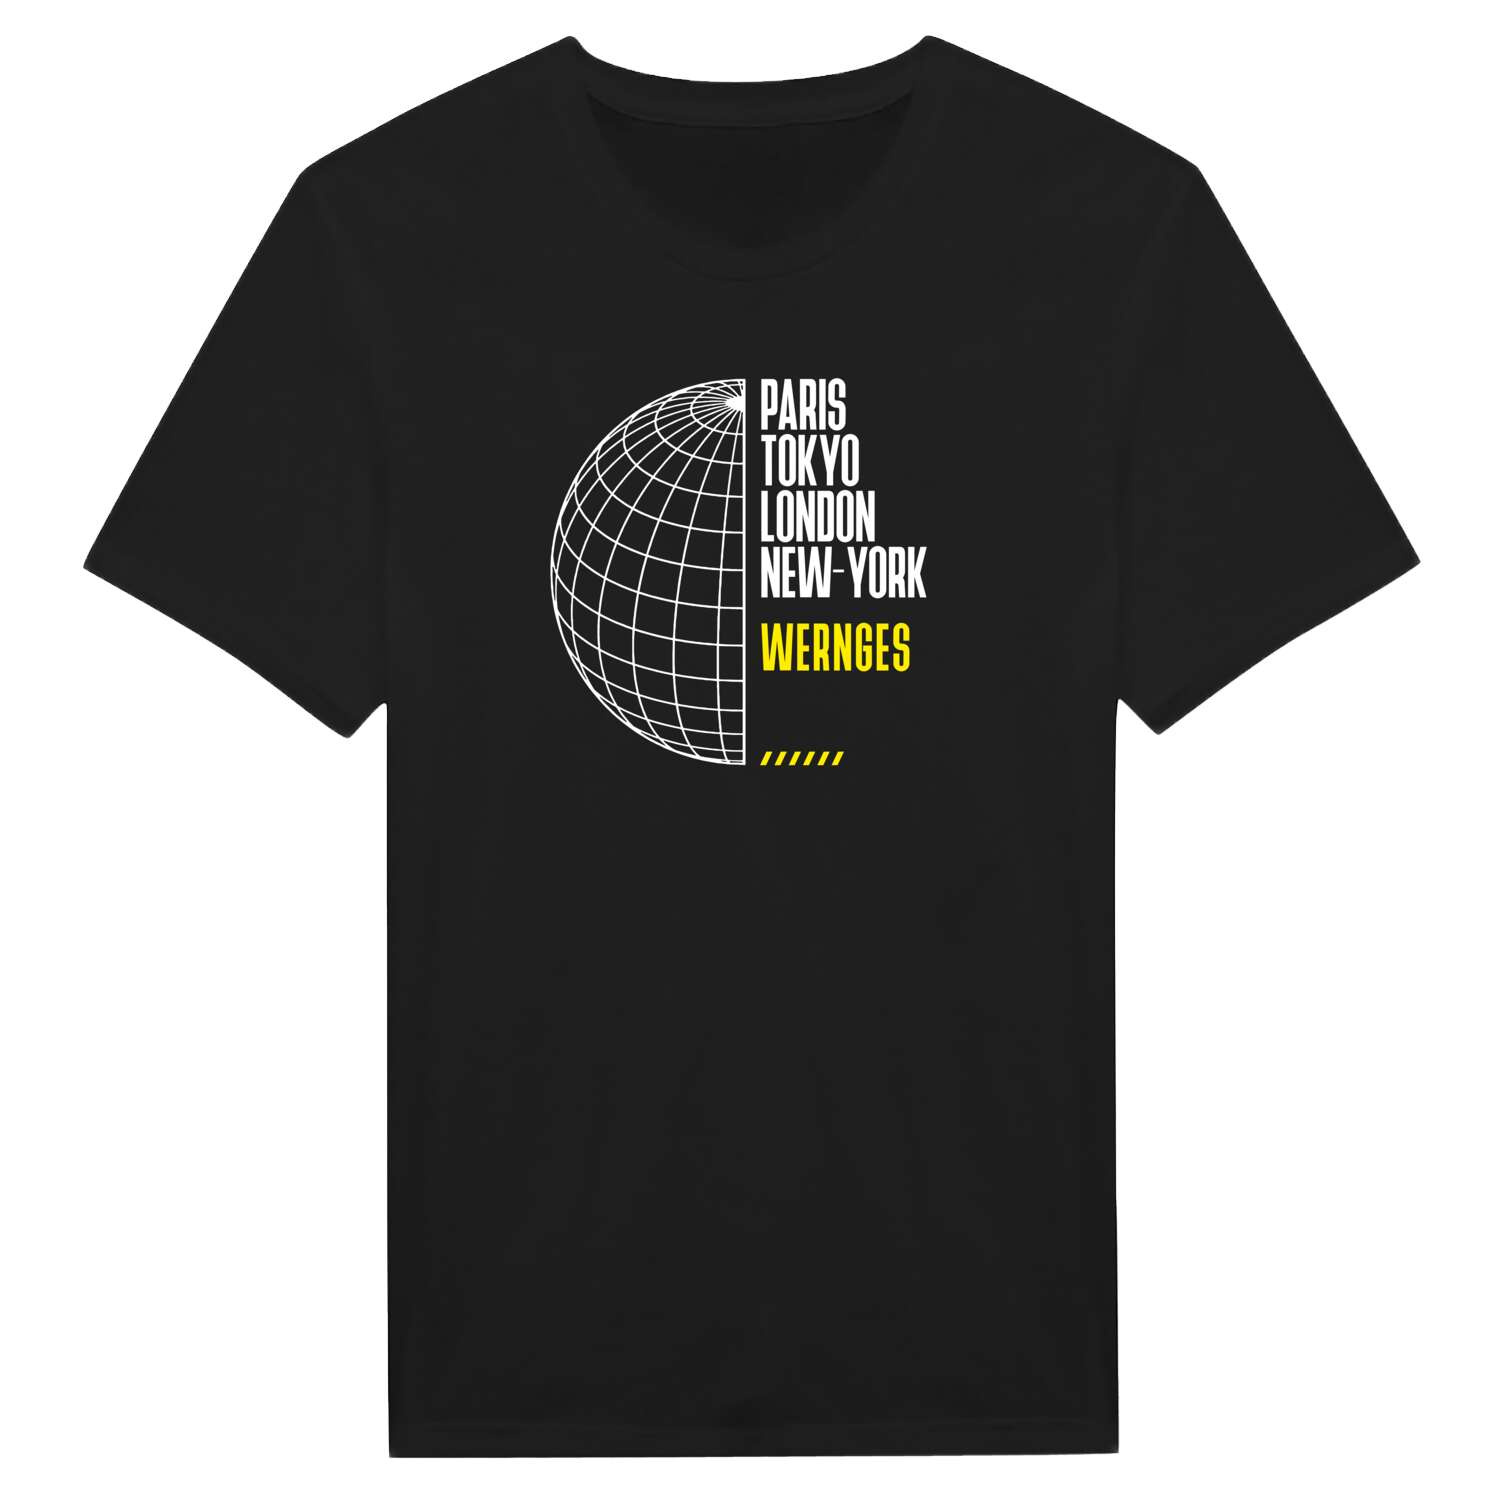 Wernges T-Shirt »Paris Tokyo London«